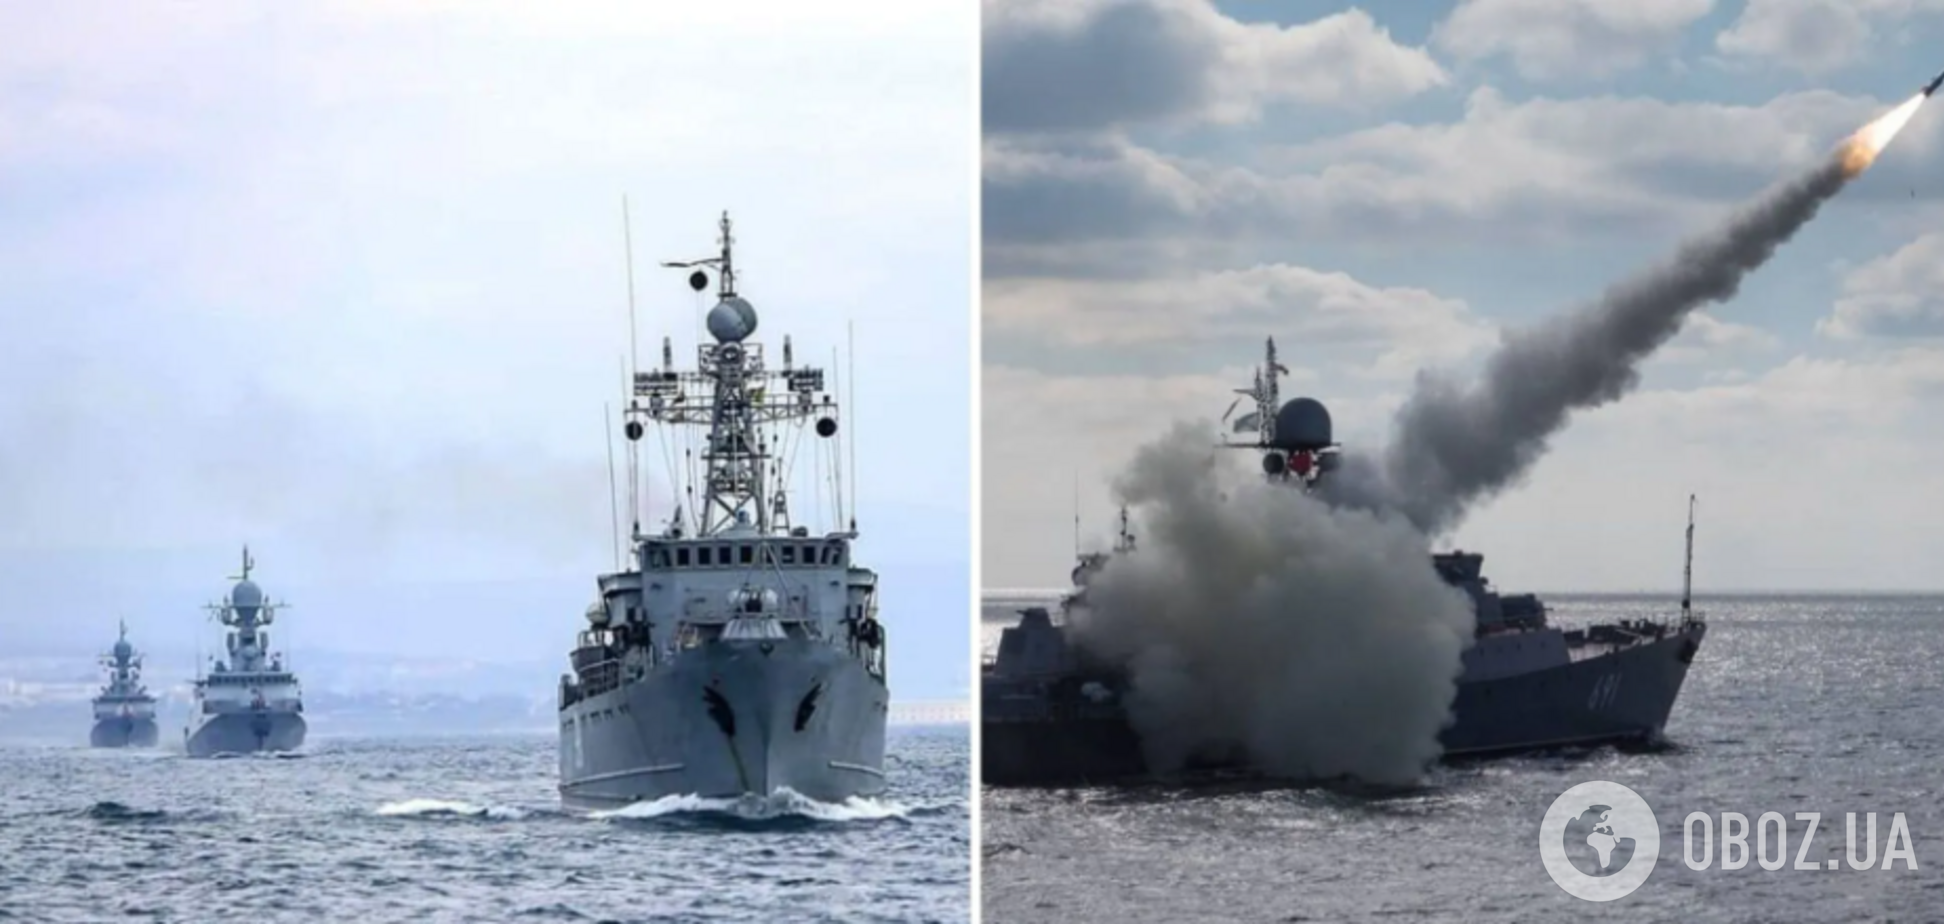 'Ворог зіткнувся з проблемою': у ВМС пояснили, чому Росія довго не запускає ракети з моря